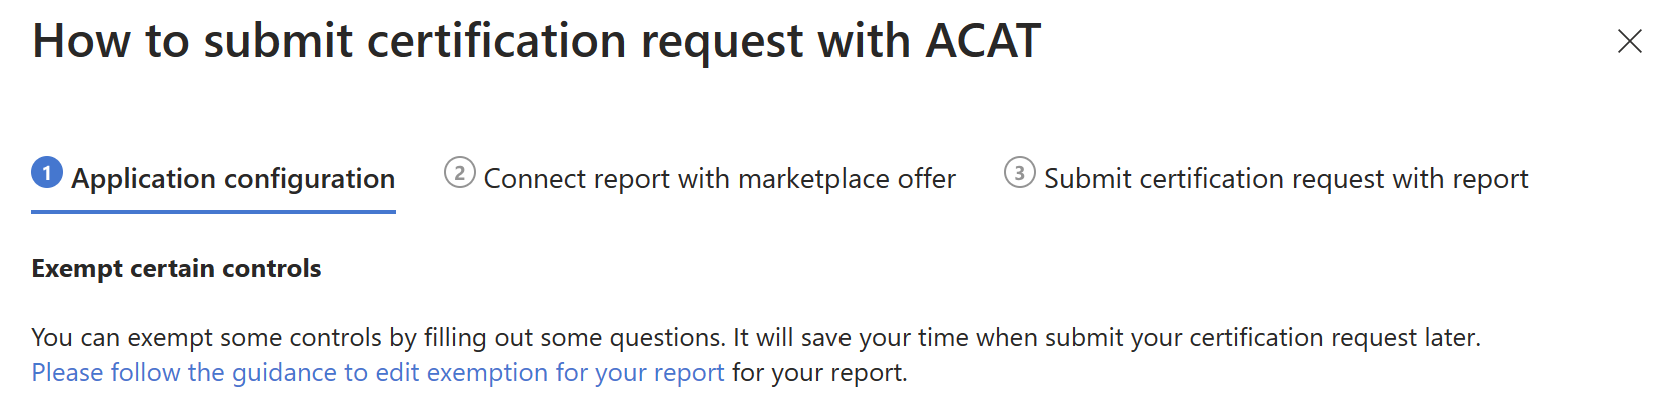 ACAT による認定の提出に関するガイダンス